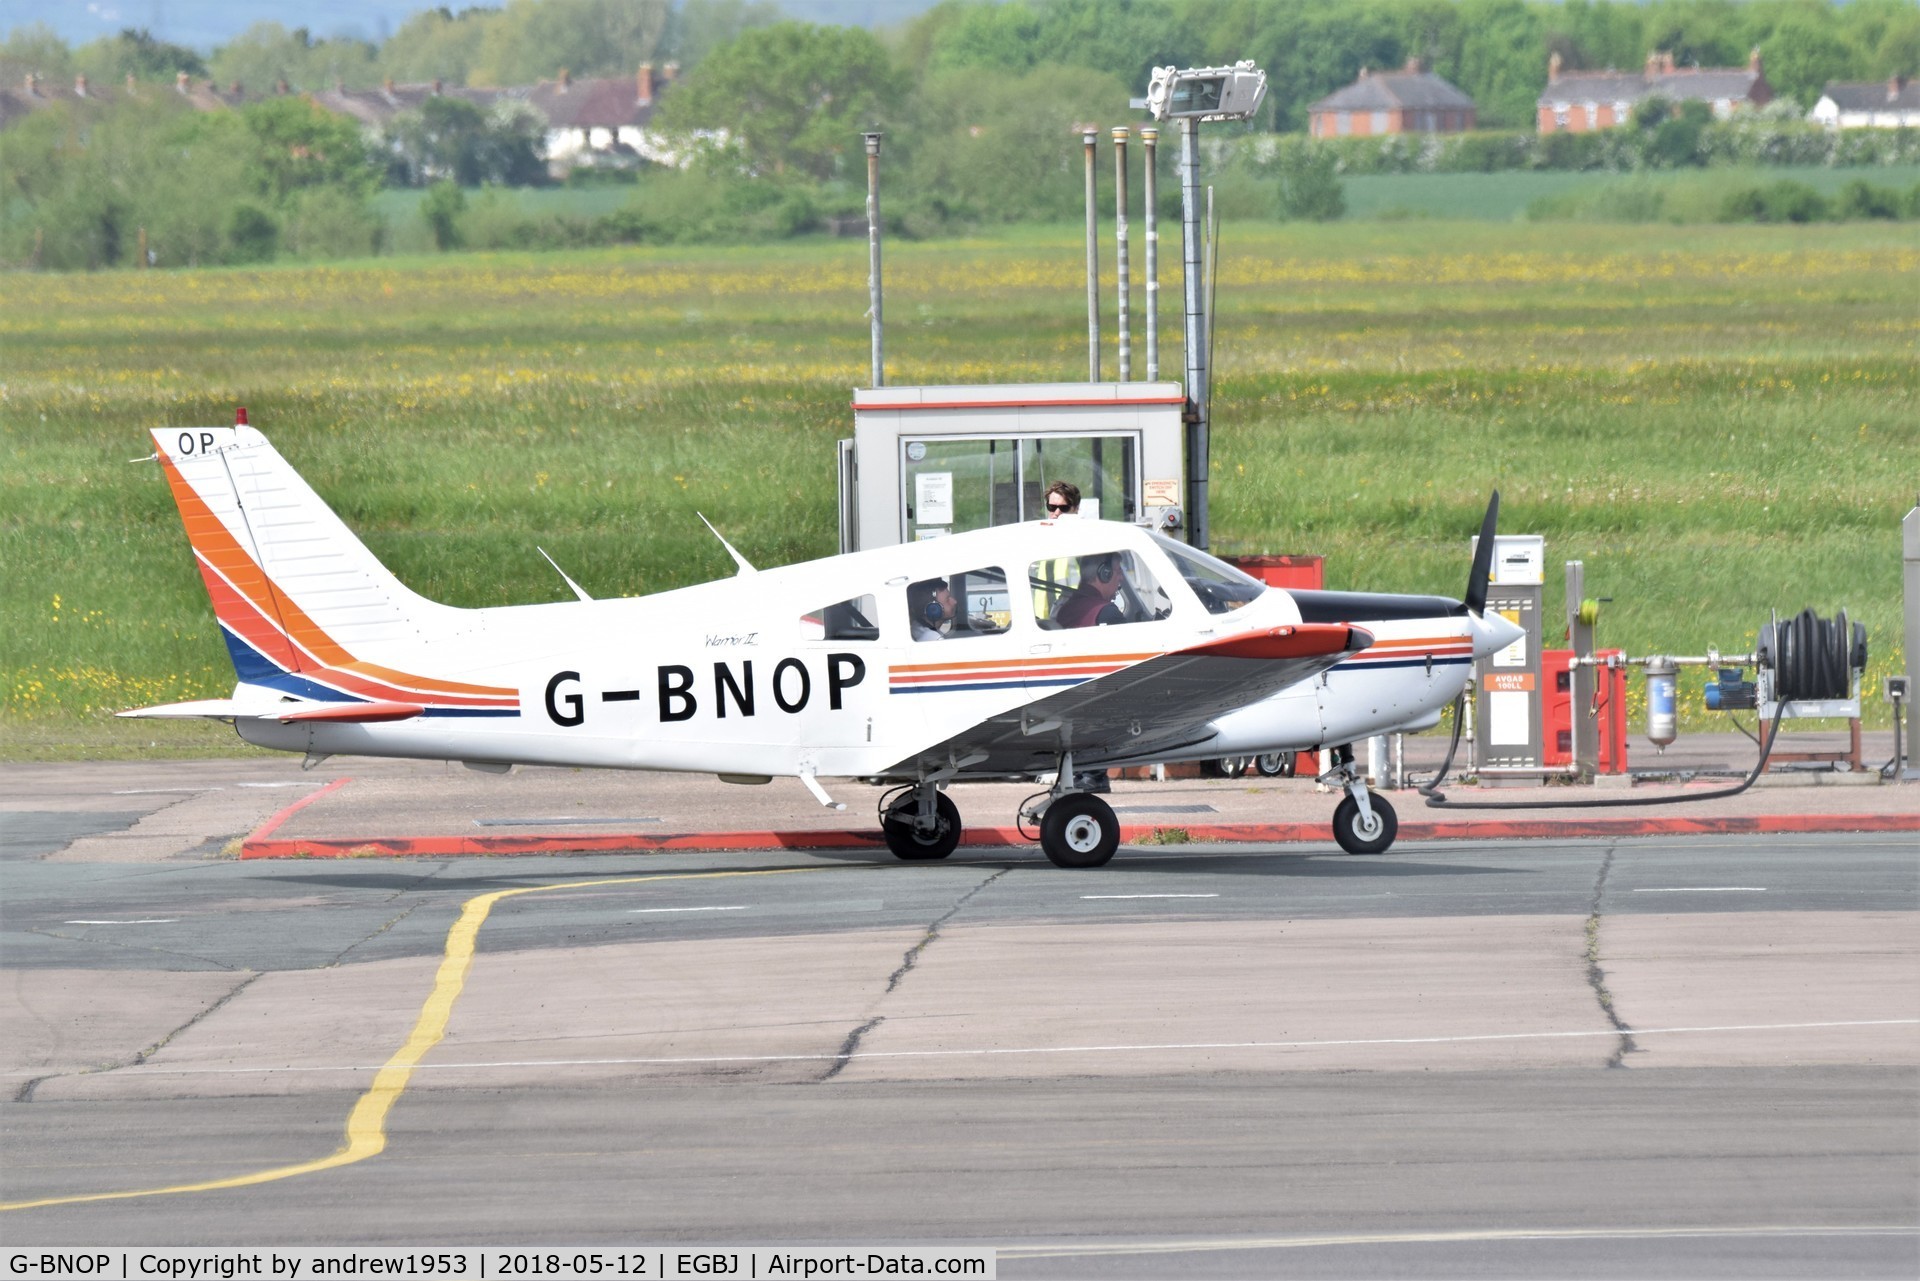 G-BNOP, 1987 Piper PA-28-161 Cherokee Warrior II C/N 2816027, G-BNOP at Gloucestershire Airport.